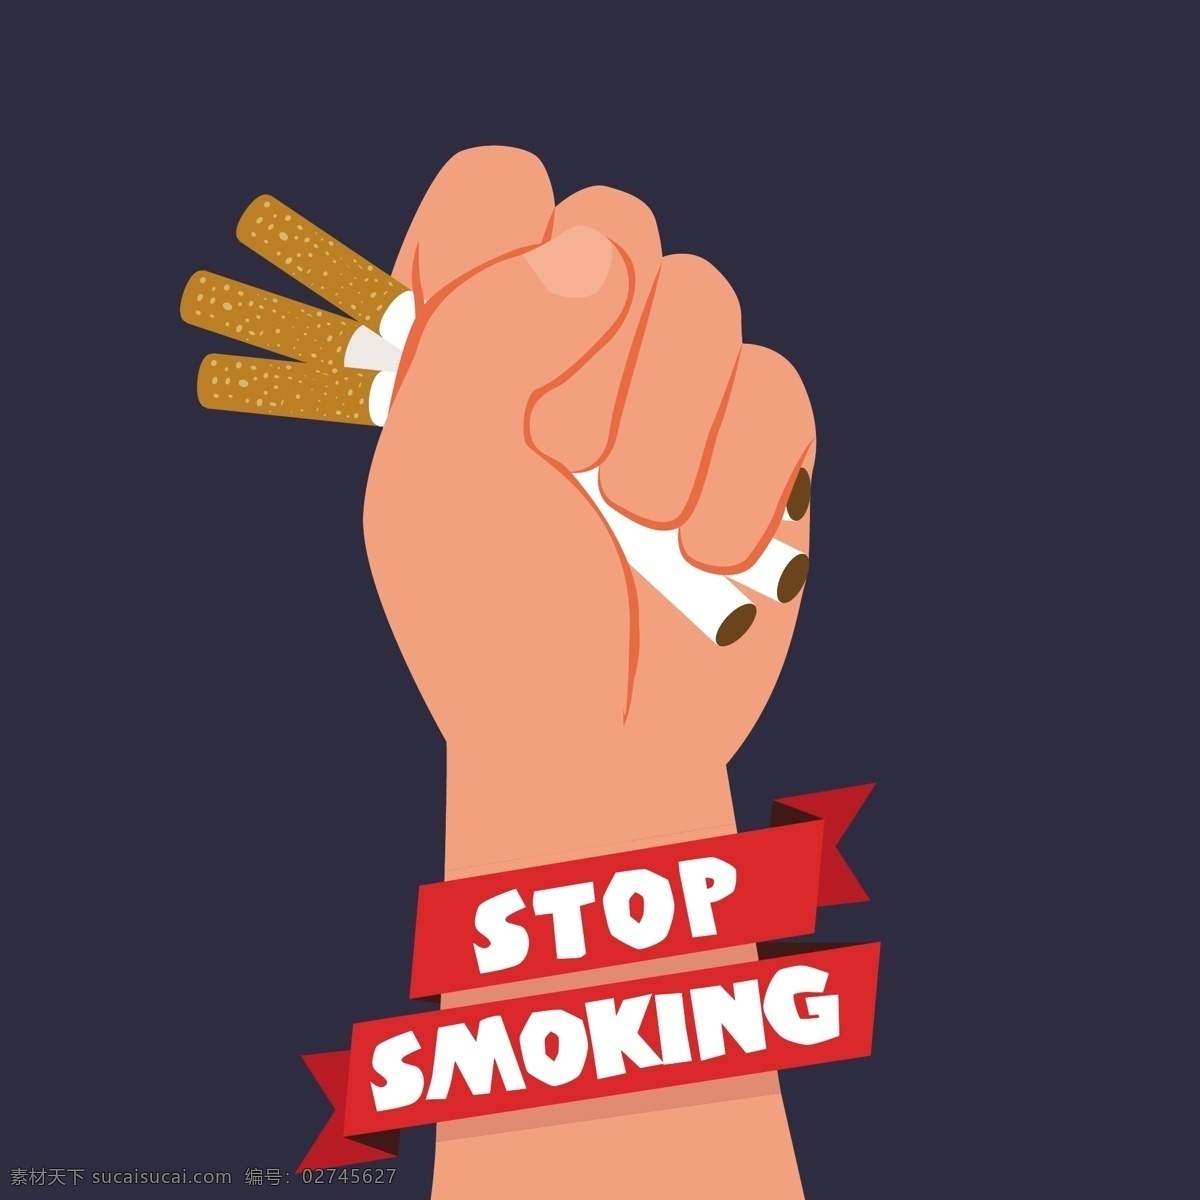 反烟草日背景 背景 医疗 世界 健康 烟雾 癌症 警告 停止 护理 危险 香烟 吸烟 离开 白天 生活方式 医疗保健 风险 信号 停车标志